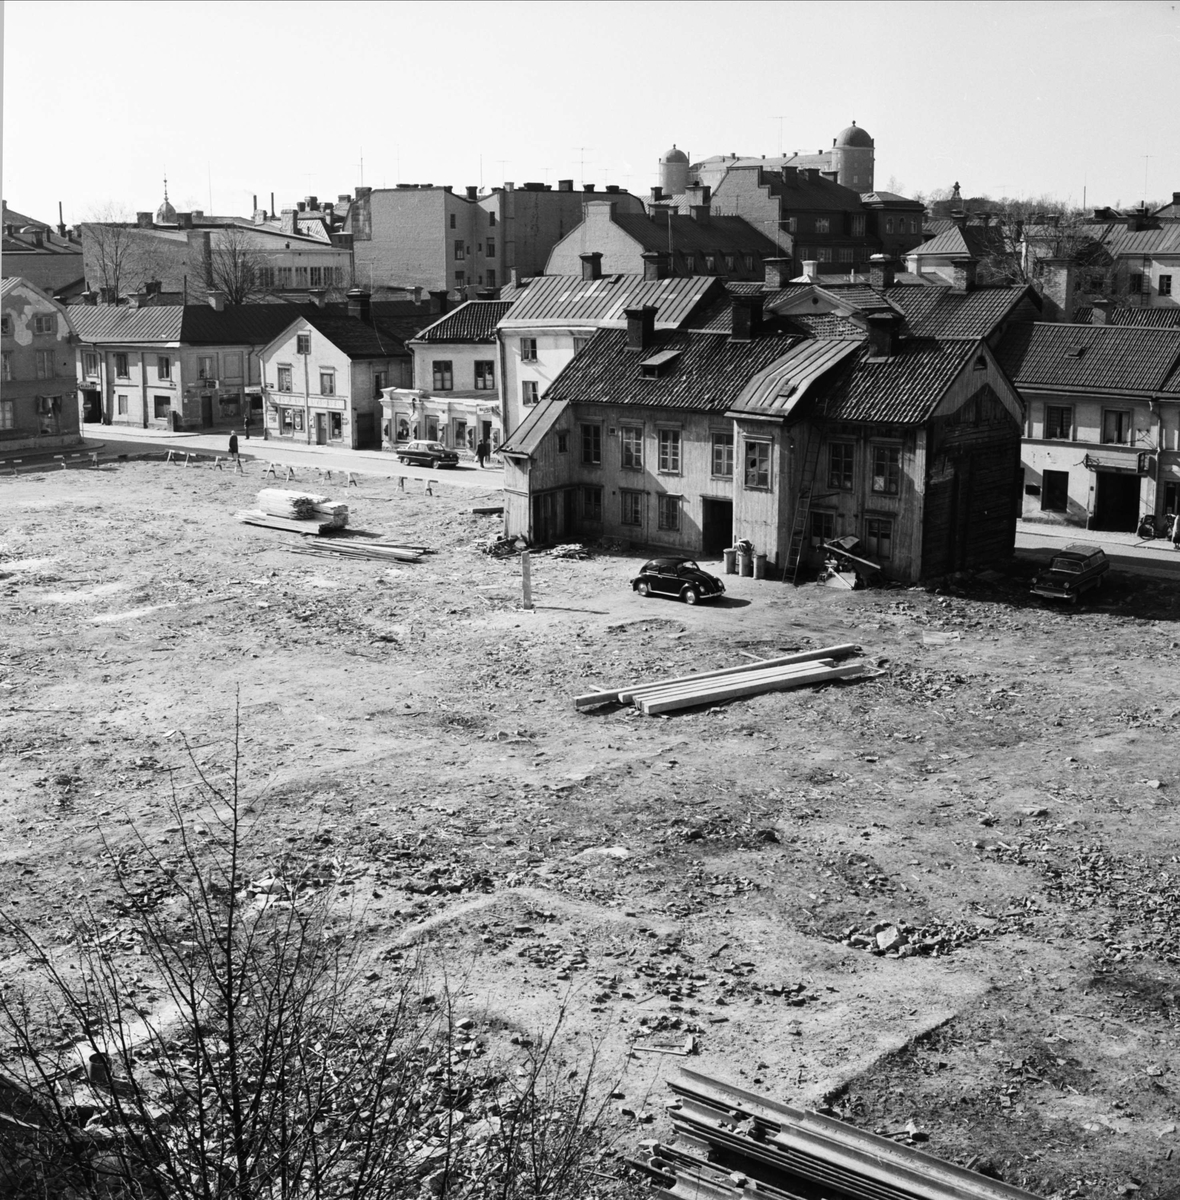 Rivningstomt i kvarteret Svanen, Dragarbrunnsgatan - S:t Persgatan, Uppsala 1961